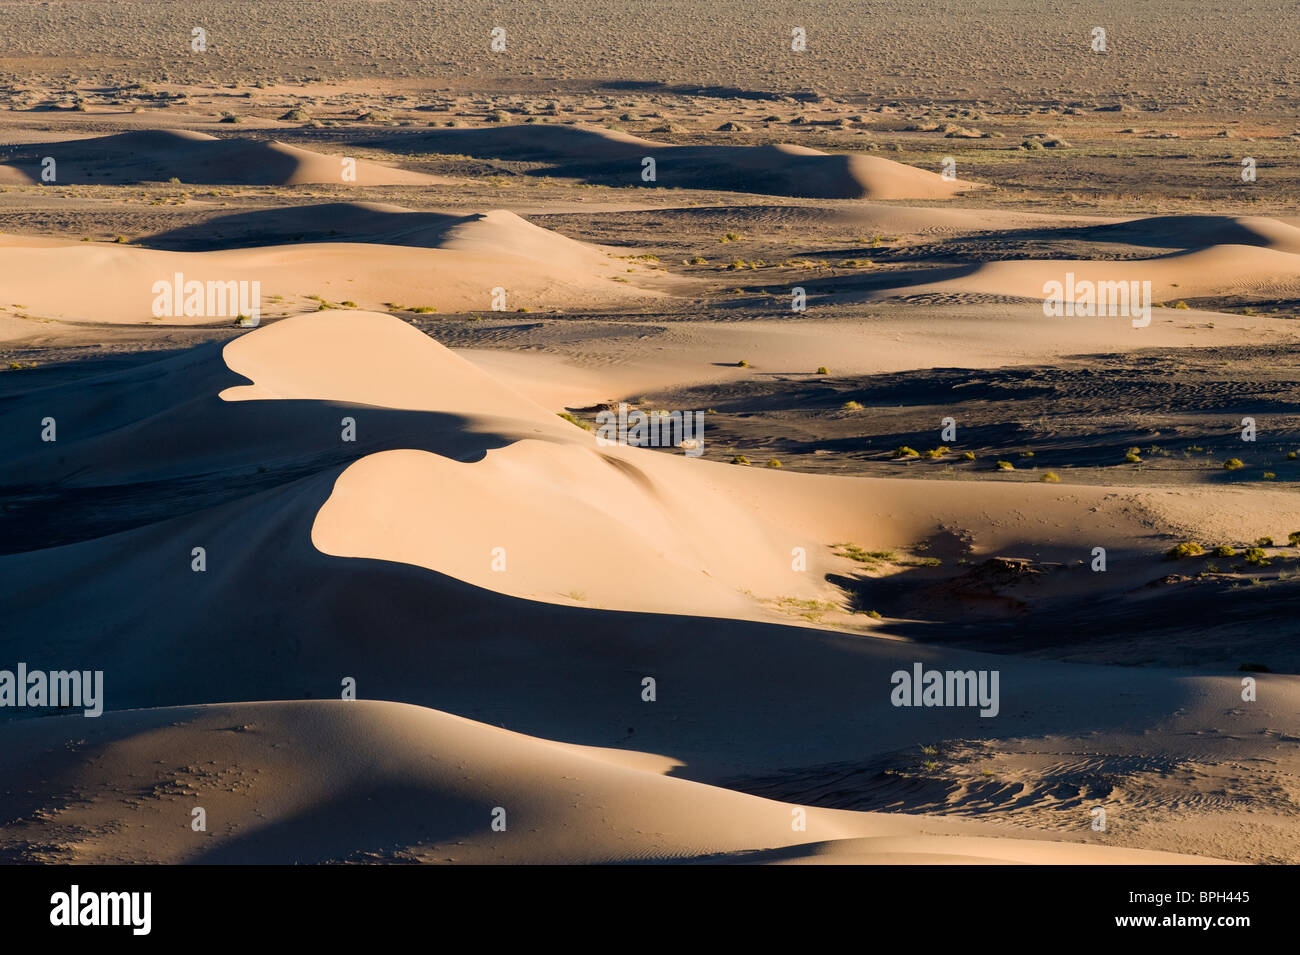 Khongoryn Els dunas de arena en el sur del desierto de Gobi, Mongolia invierno Foto de stock